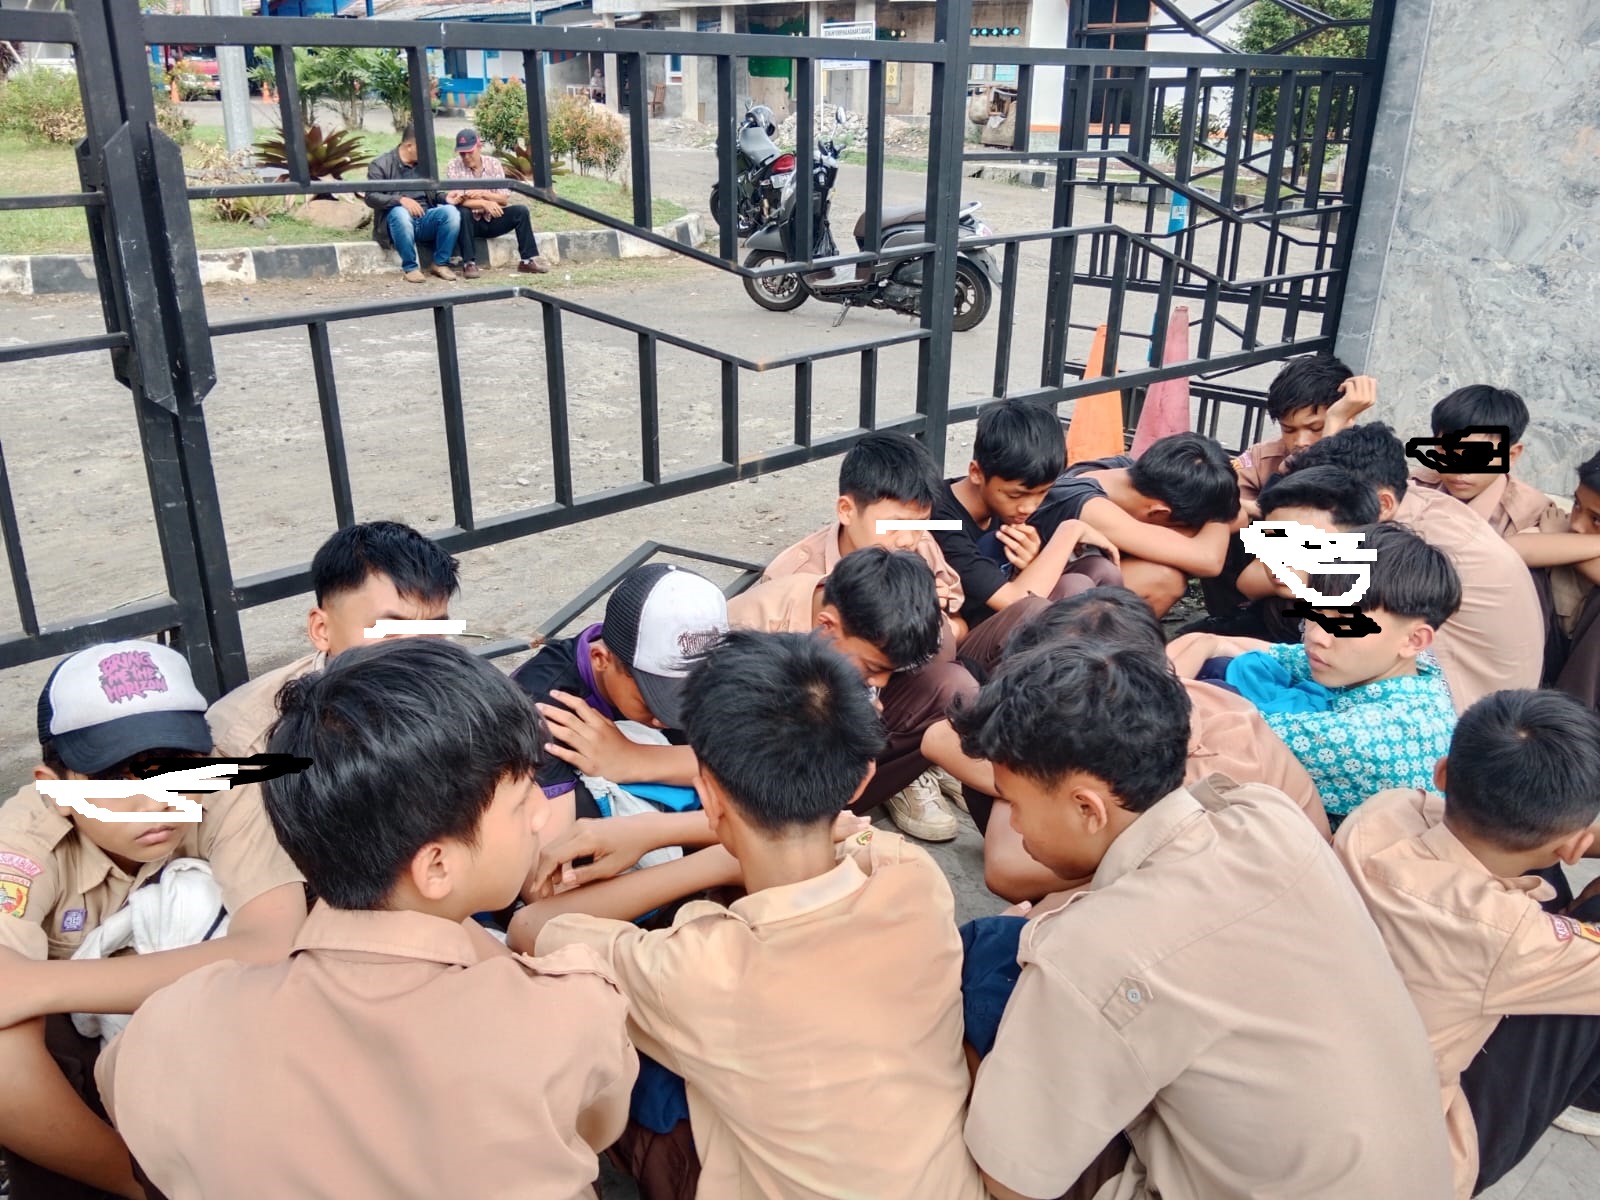 DIAMANKAN : Puluhan pelajar SMP saat diamankan karena berniat hendak melakukan tawuran di depan Kantor Kecamatan Cicurug.